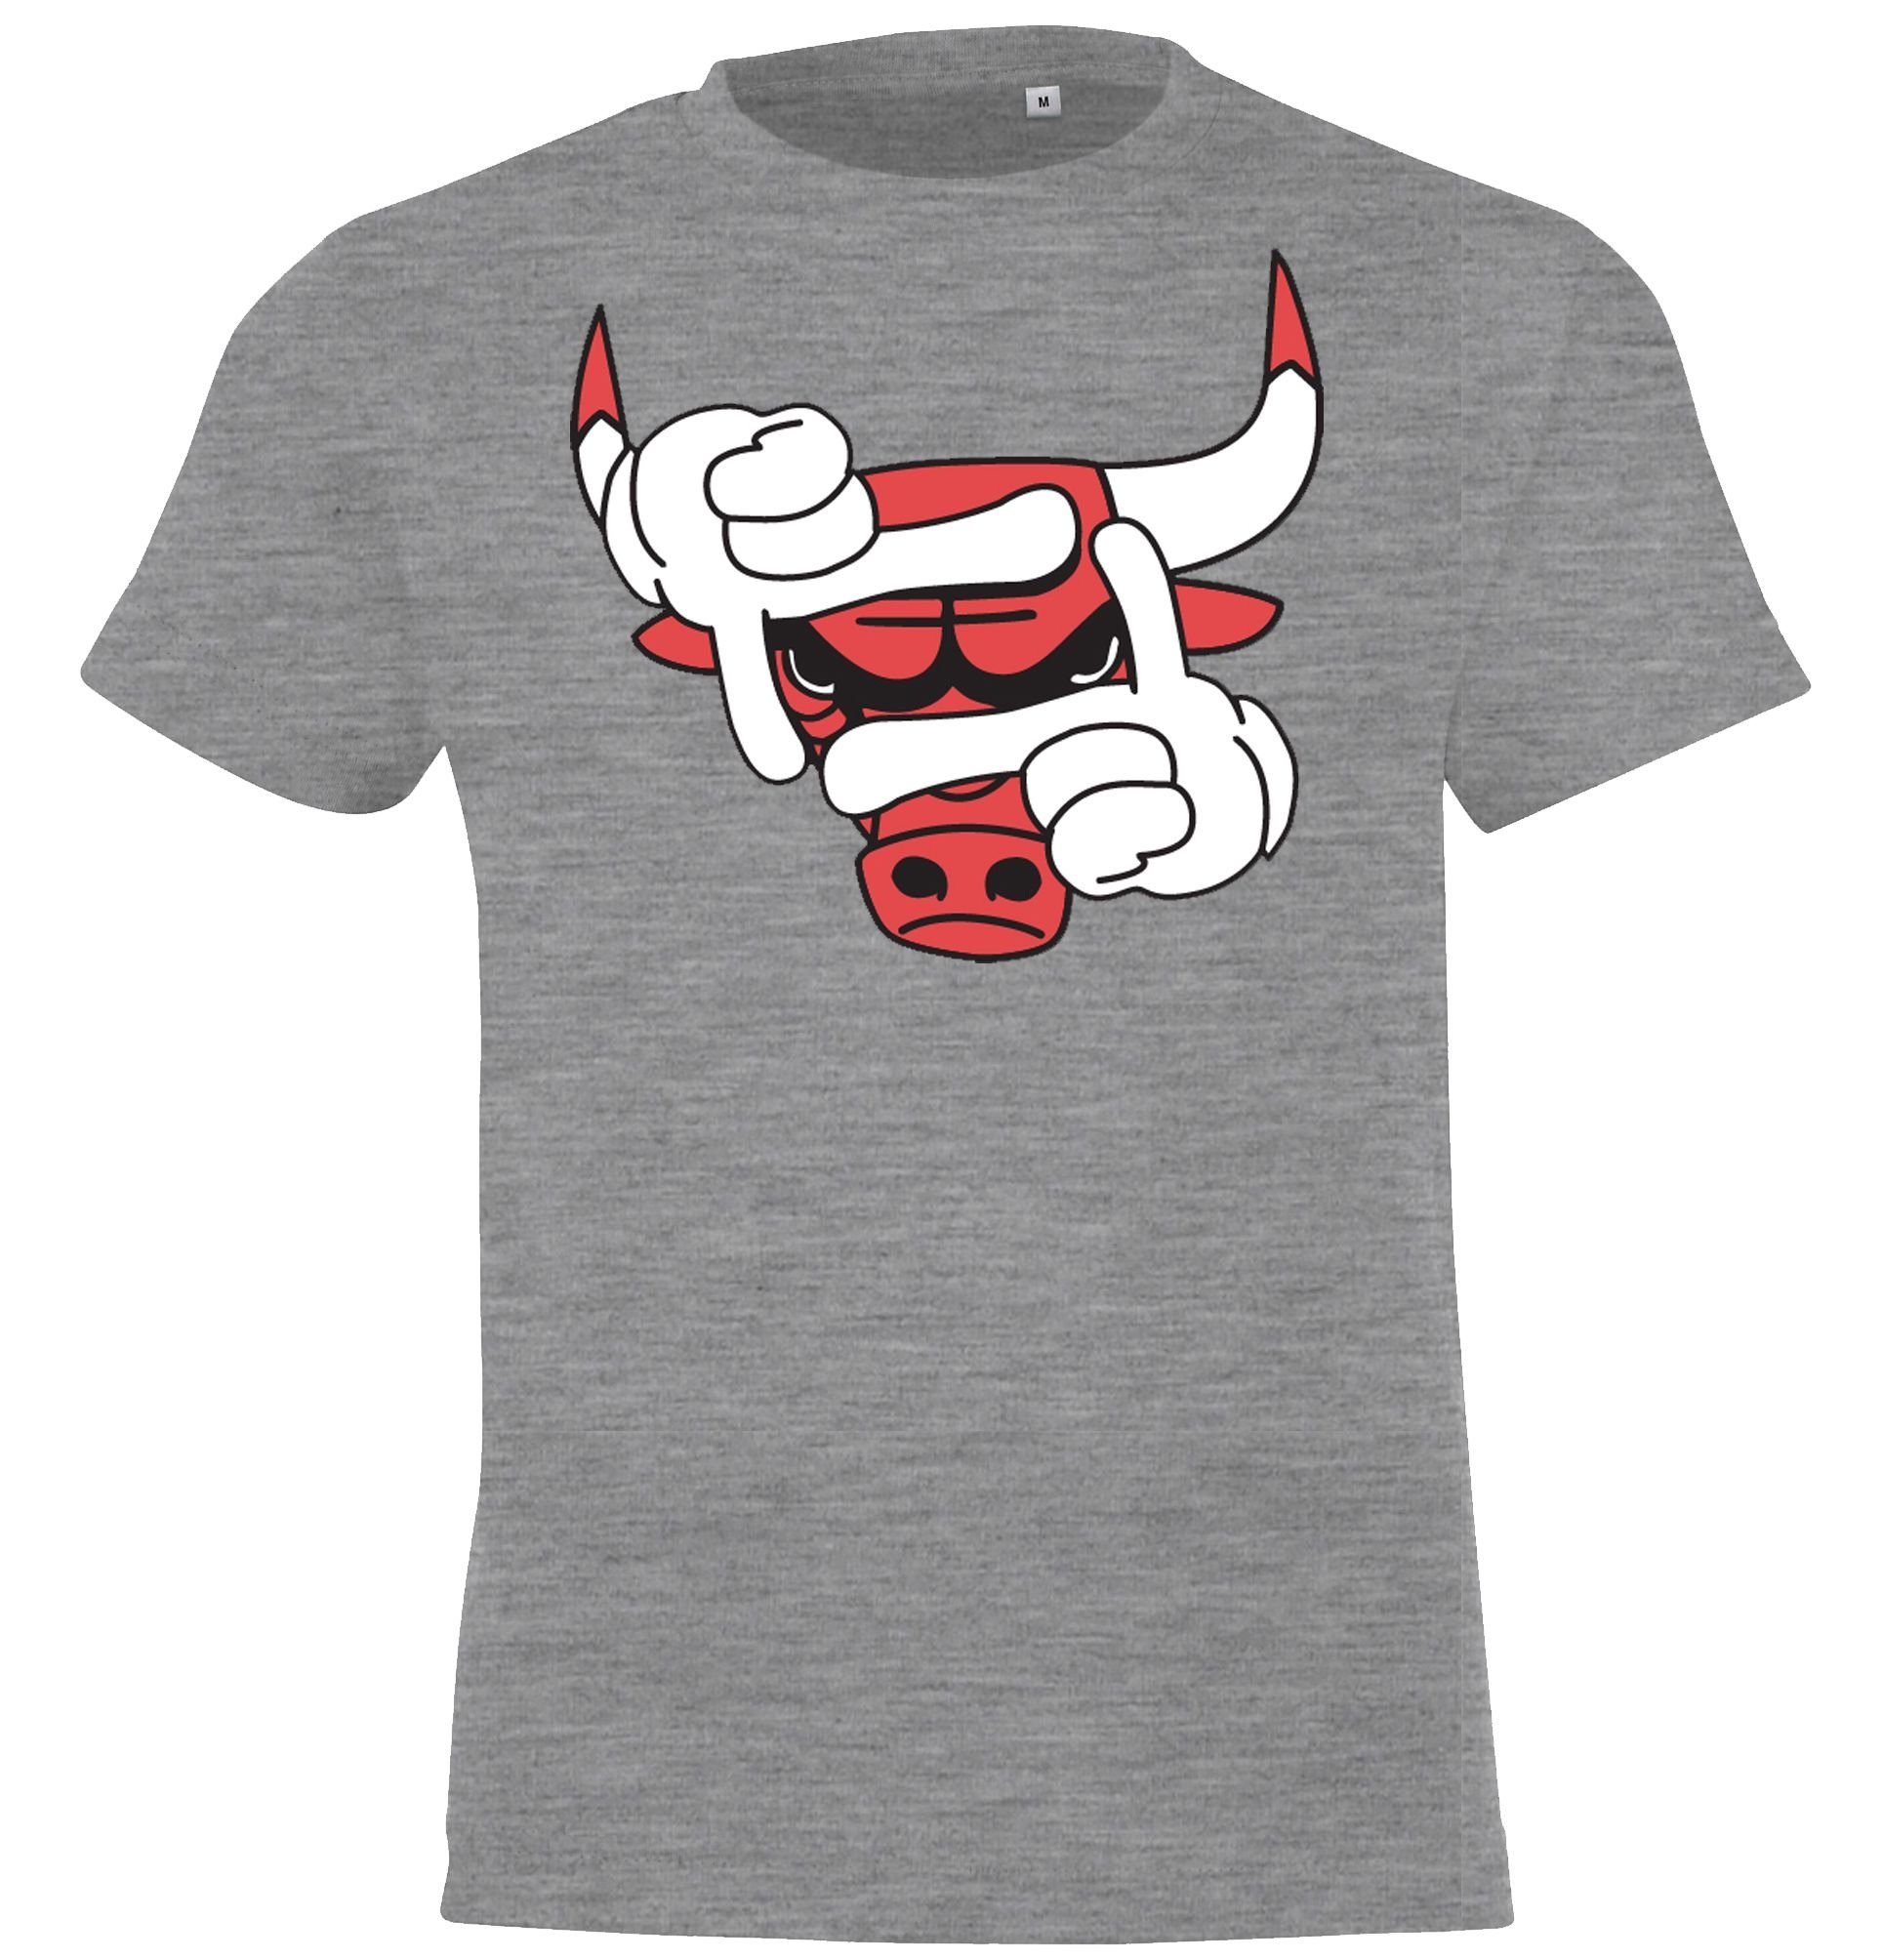 Youth Designz T-Shirt Bulls Kinder T-Shirt für Jungen und Mädchen Grau